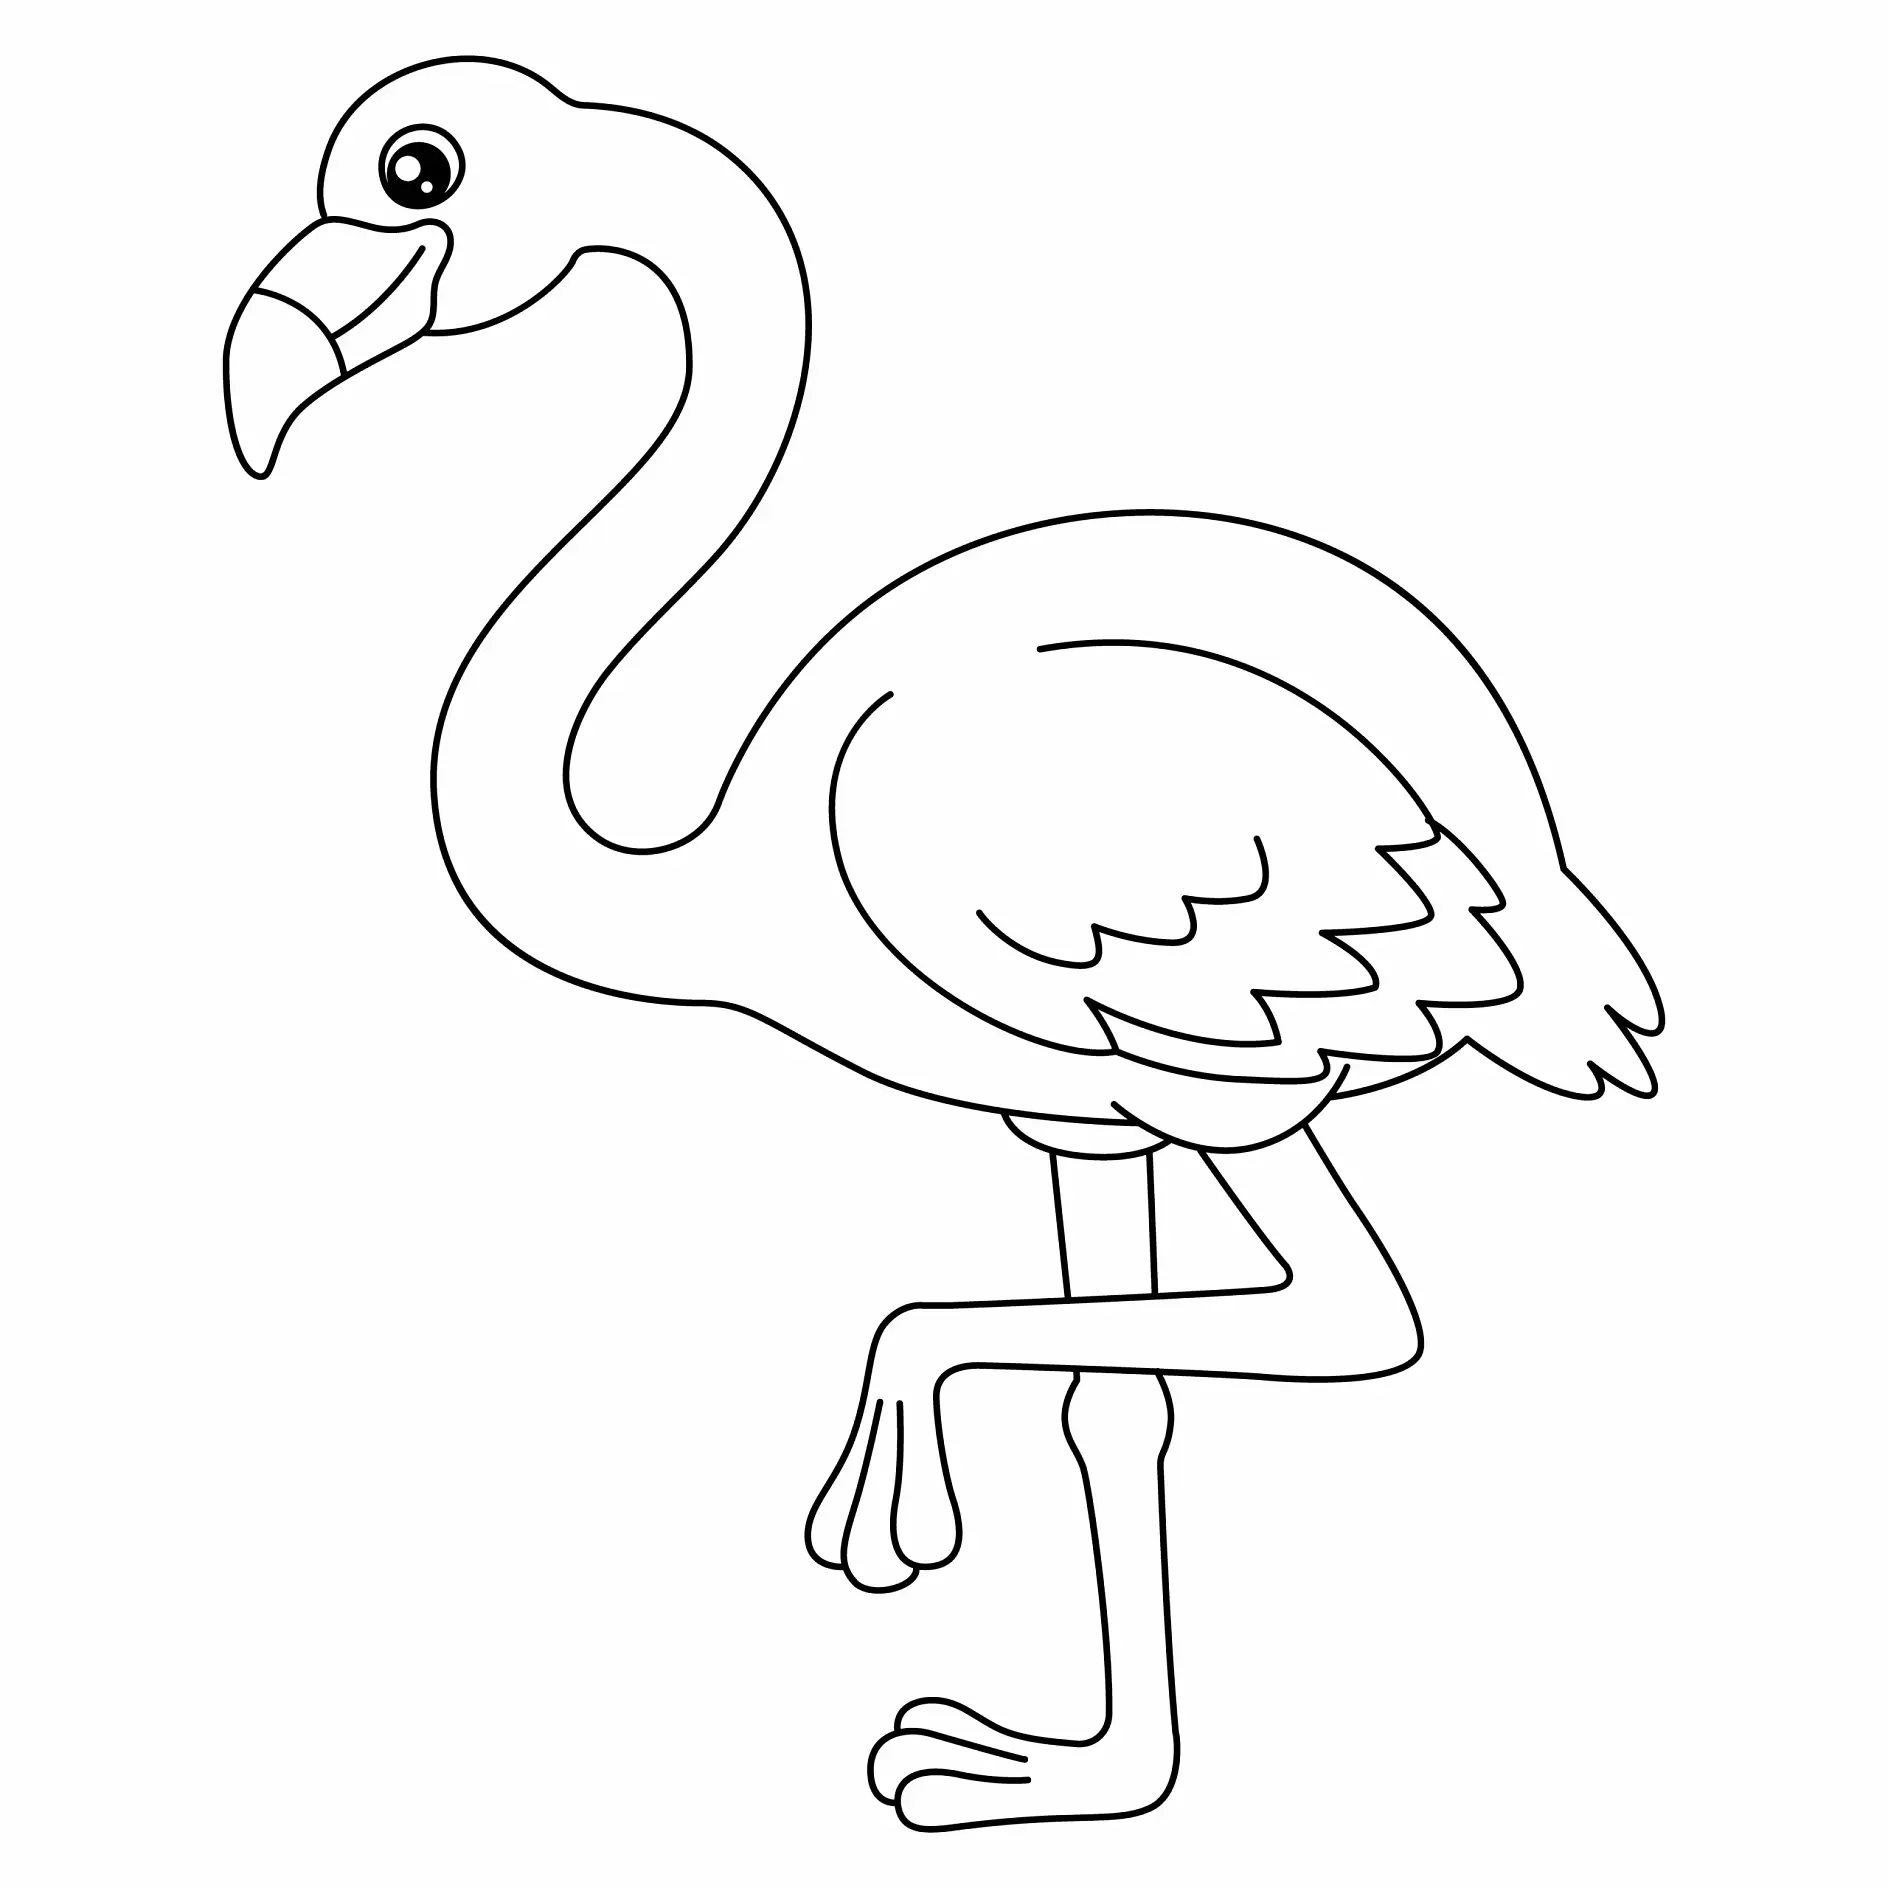 Ausmalbild Flamingo steht auf einem Bein seitlich